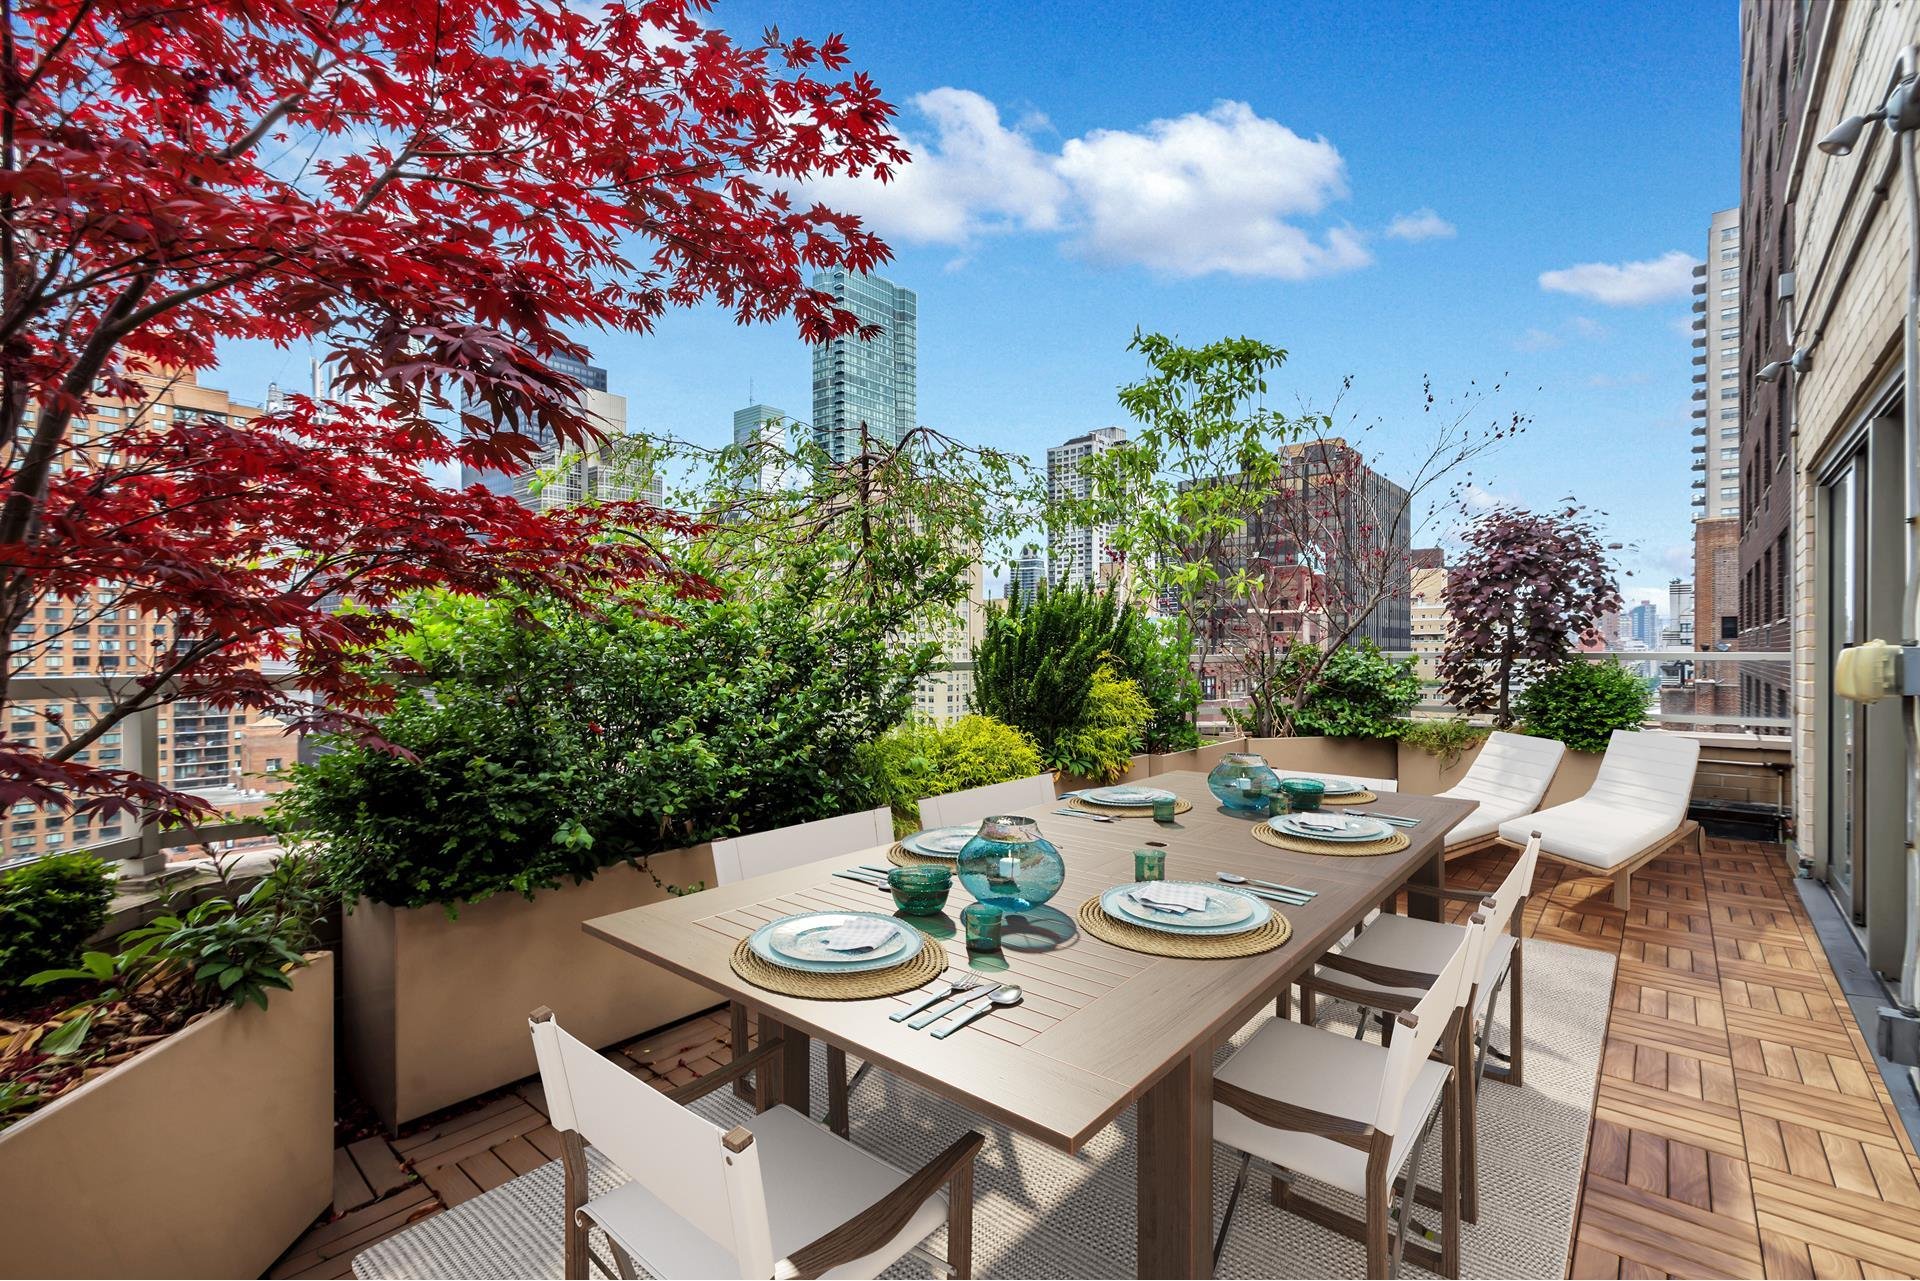 Terraza con comedor exterior de la casa de Scarlett Johansson en Nueva York